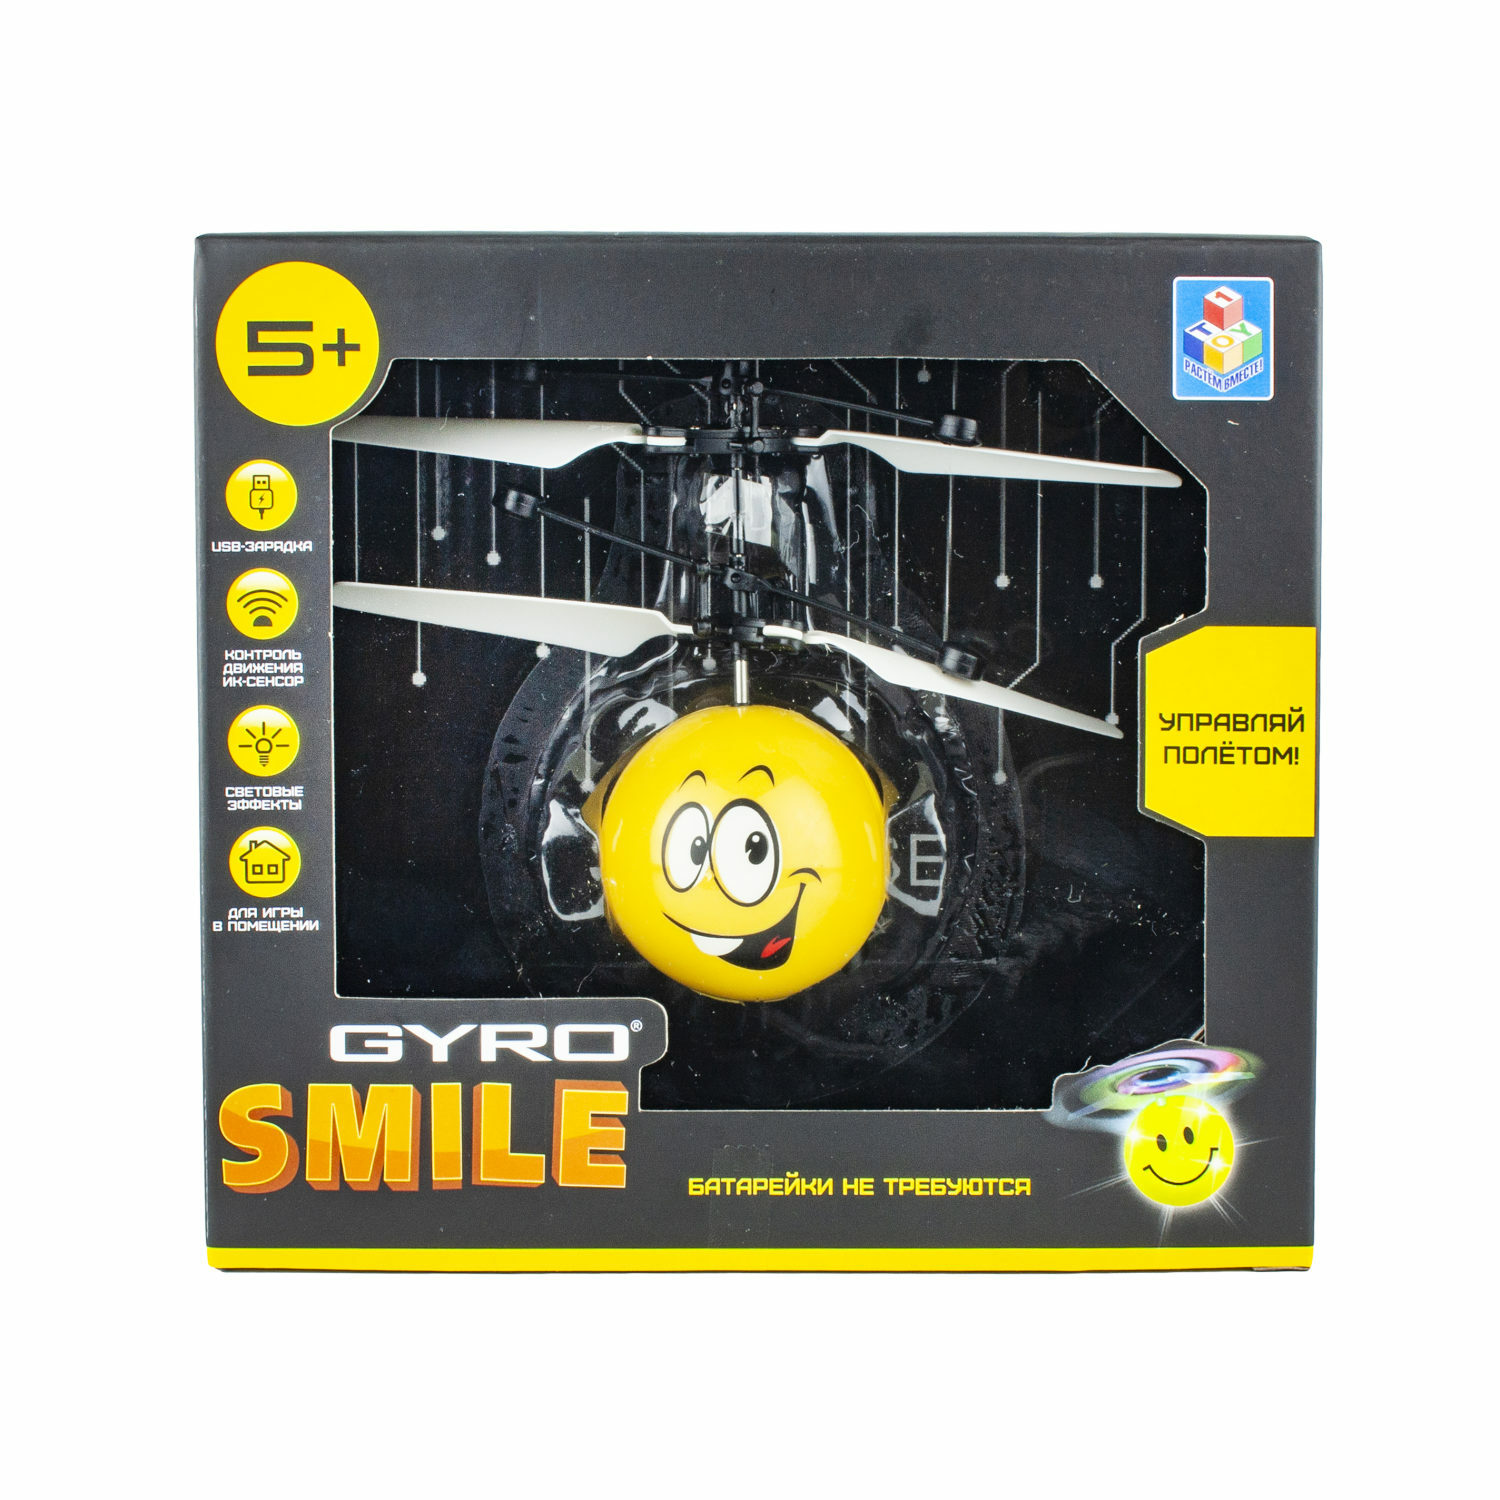 Интерактивная игрушка 1TOY Gyro-Smile на сенсорном управлении со световыми эффектами - фото 3